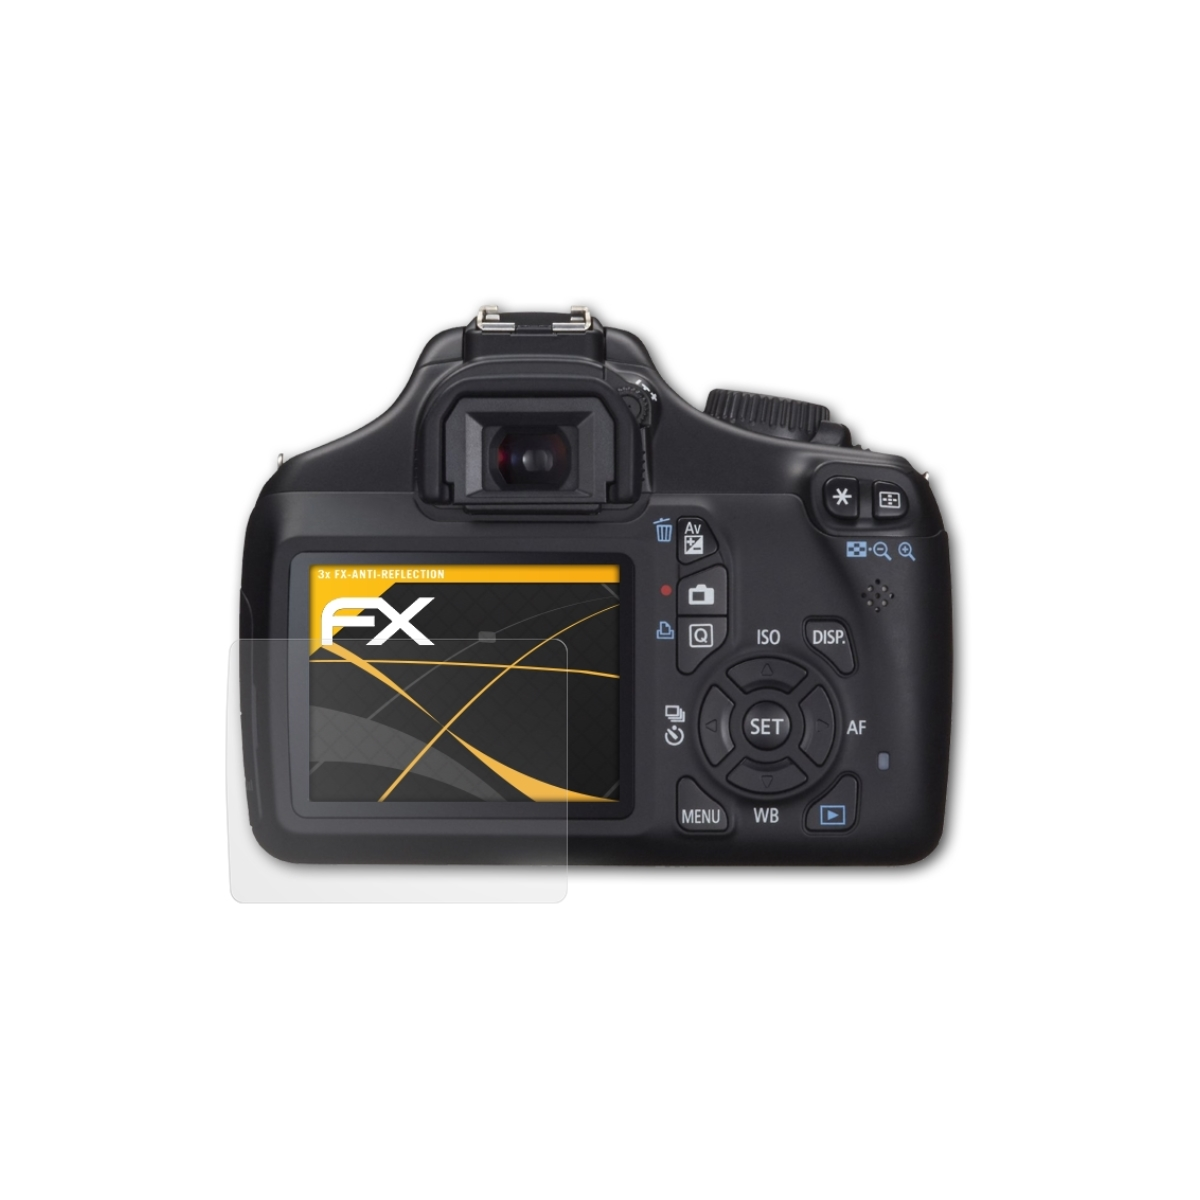 EOS Displayschutz(für ATFOLIX Canon 3x 1100D) FX-Antireflex